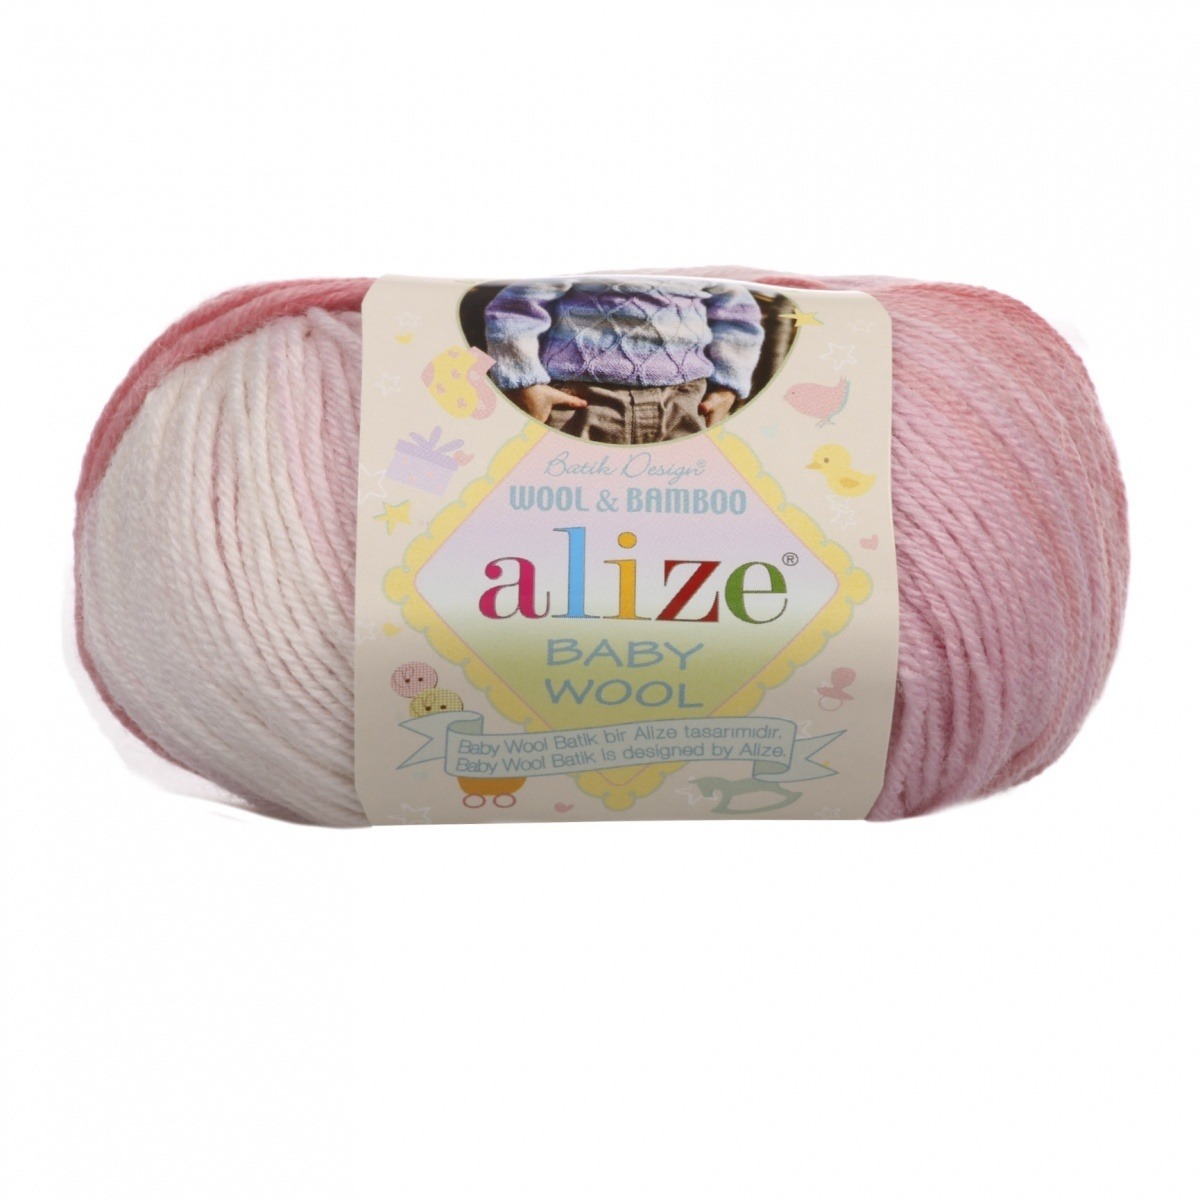 Alize "Baby wool batik" (3565)